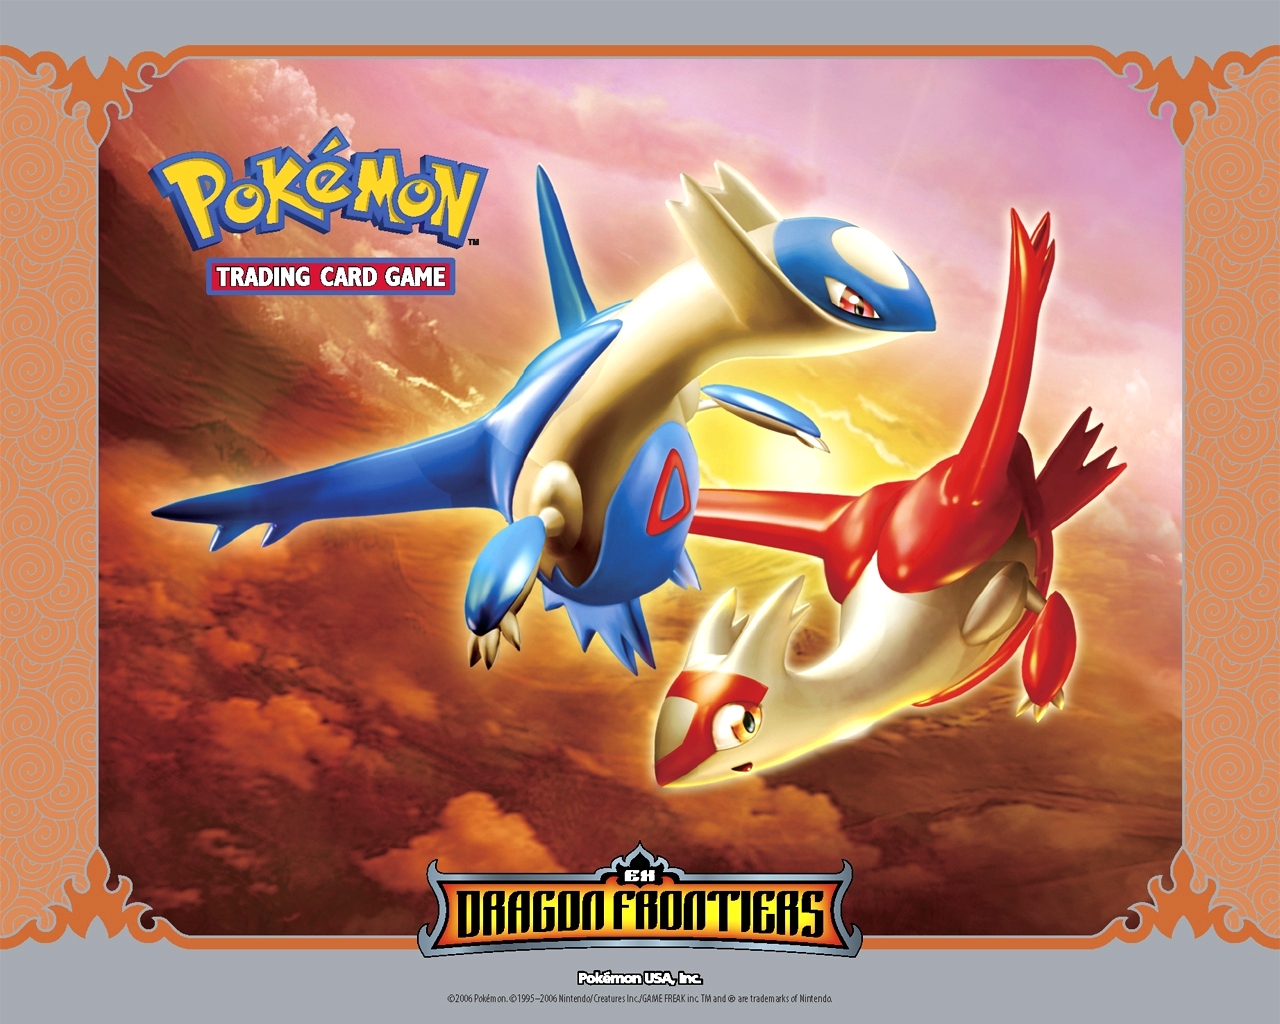 "Pokemon" desktop wallpaper number 3 (1280 x 1024 pixels)